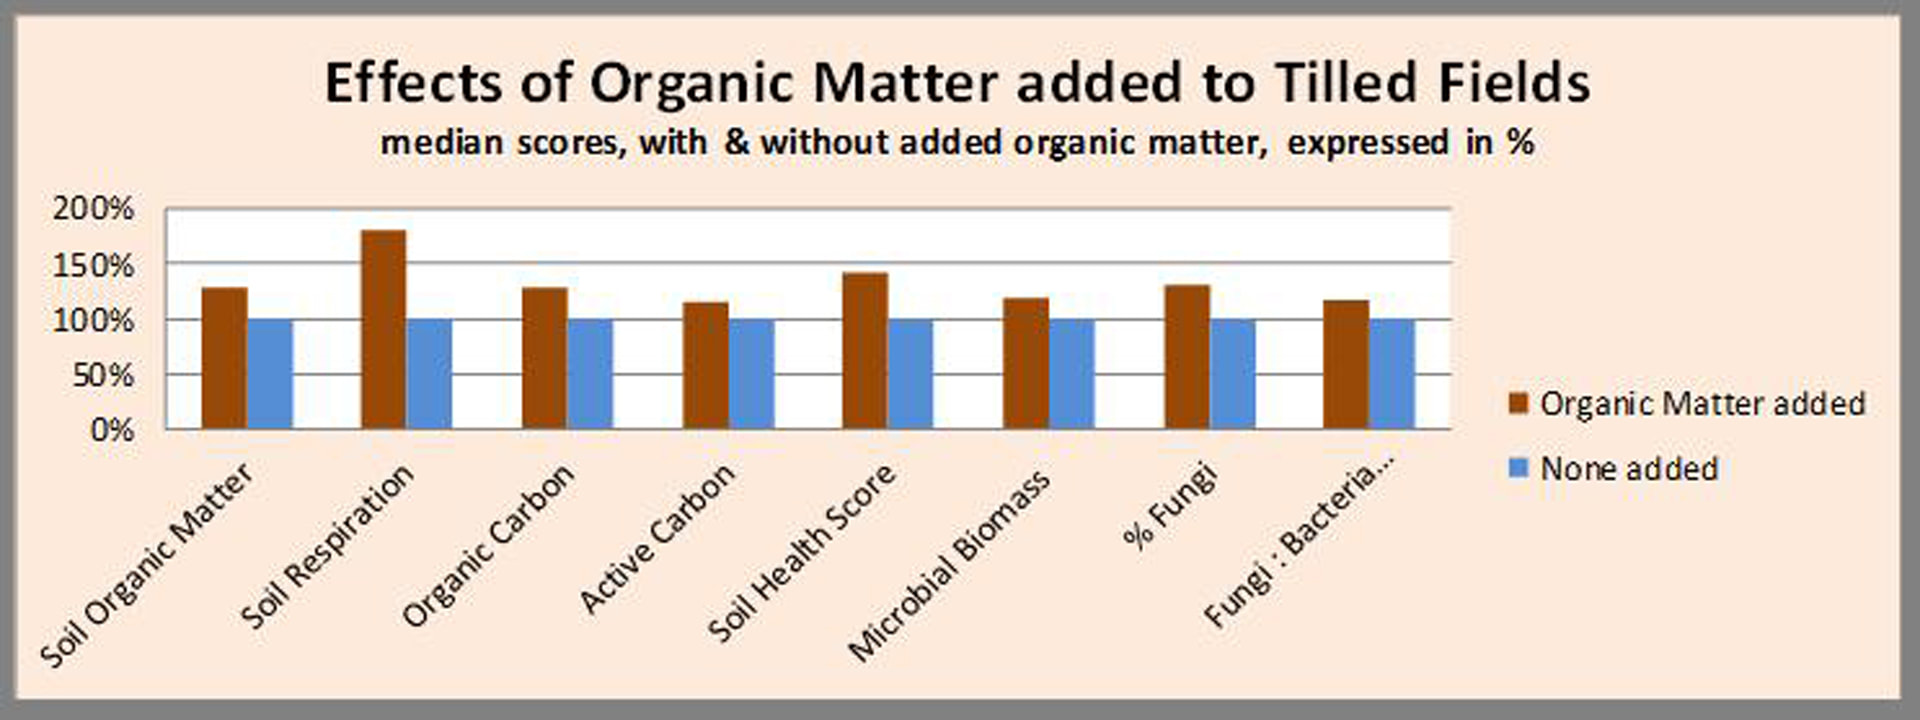 Organic Matter improves soil health